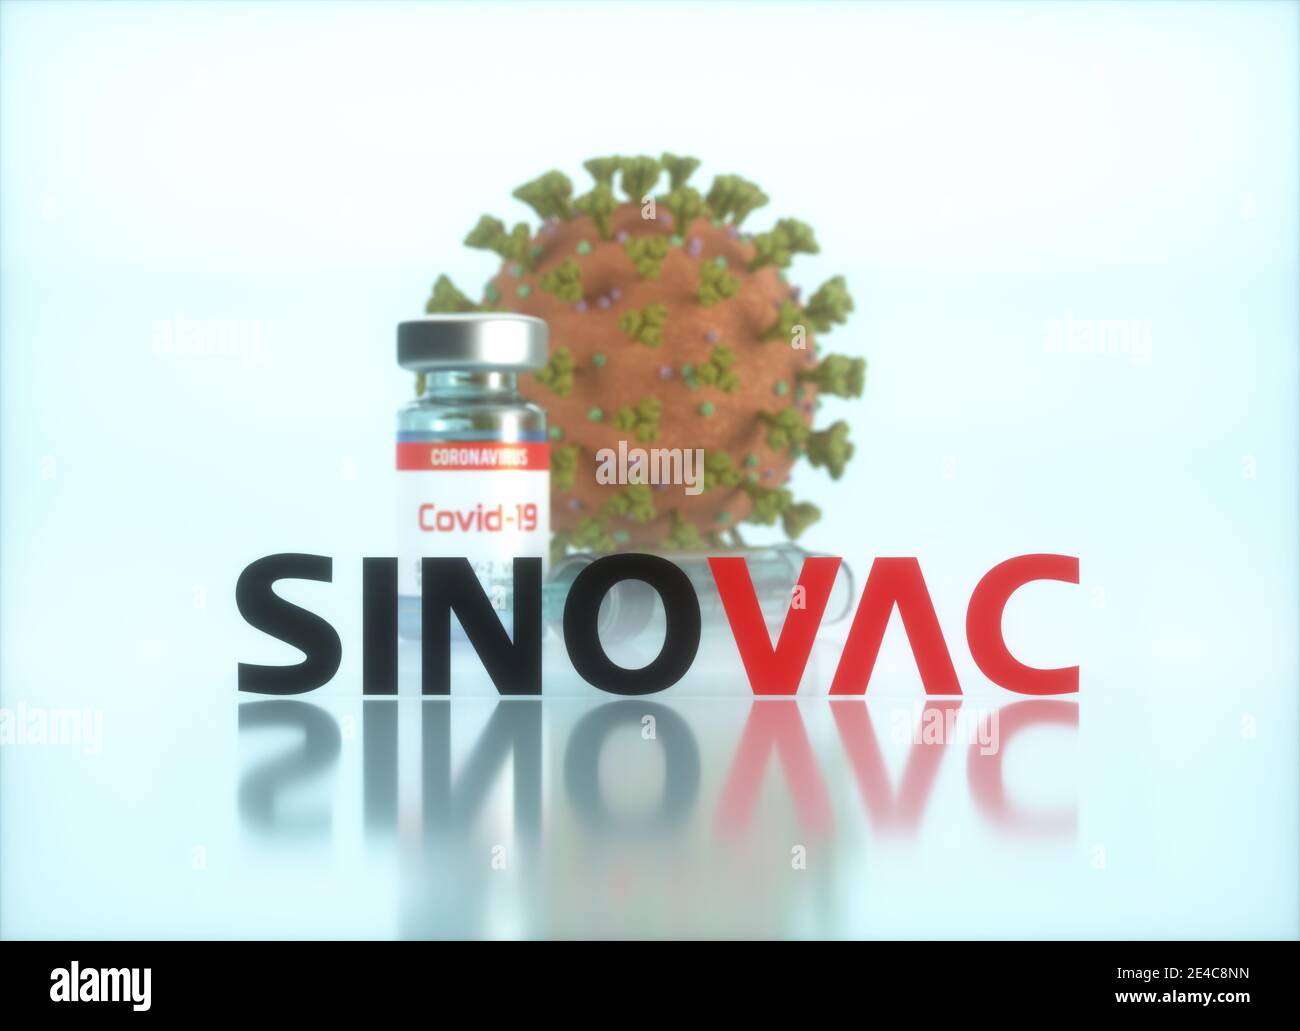 Vaccin Sinovac, image conceptuelle pour la découverte d'un vaccin contre le Covid-19, le coronavirus, le 2019-nCoV, le COV-SRAS-2. Illustration 3D. Banque D'Images